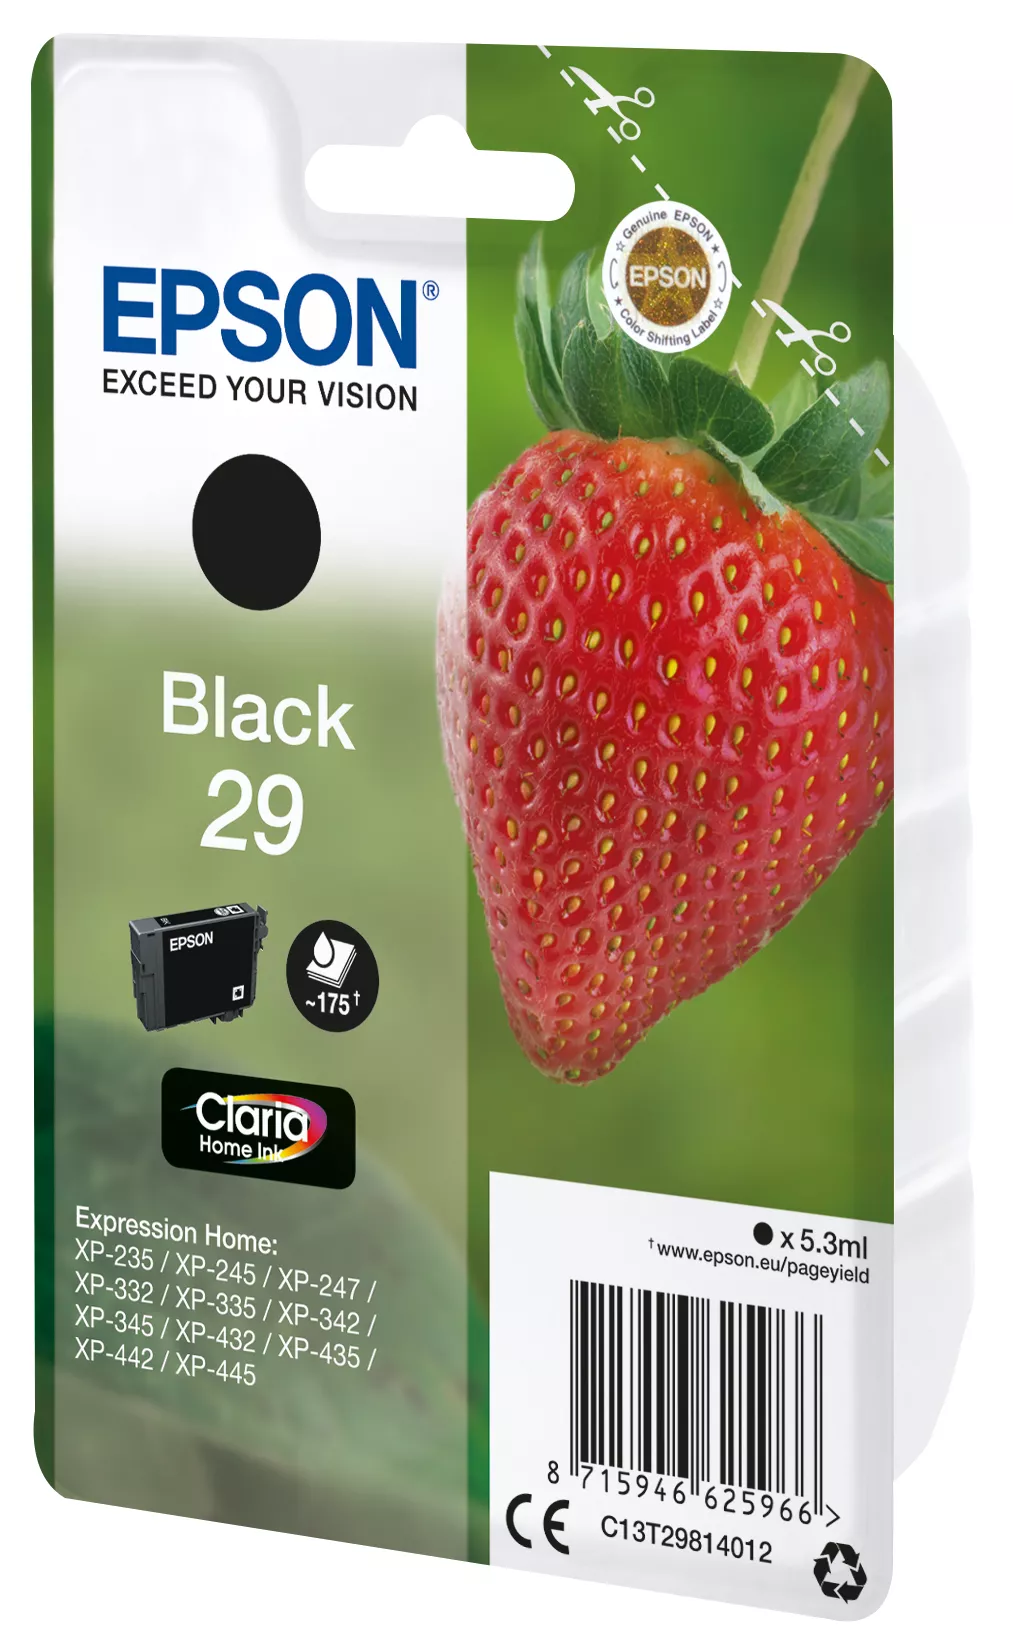 Vente EPSON Cartouche Fraise Encre Claria Home Noir avec Epson au meilleur prix - visuel 2